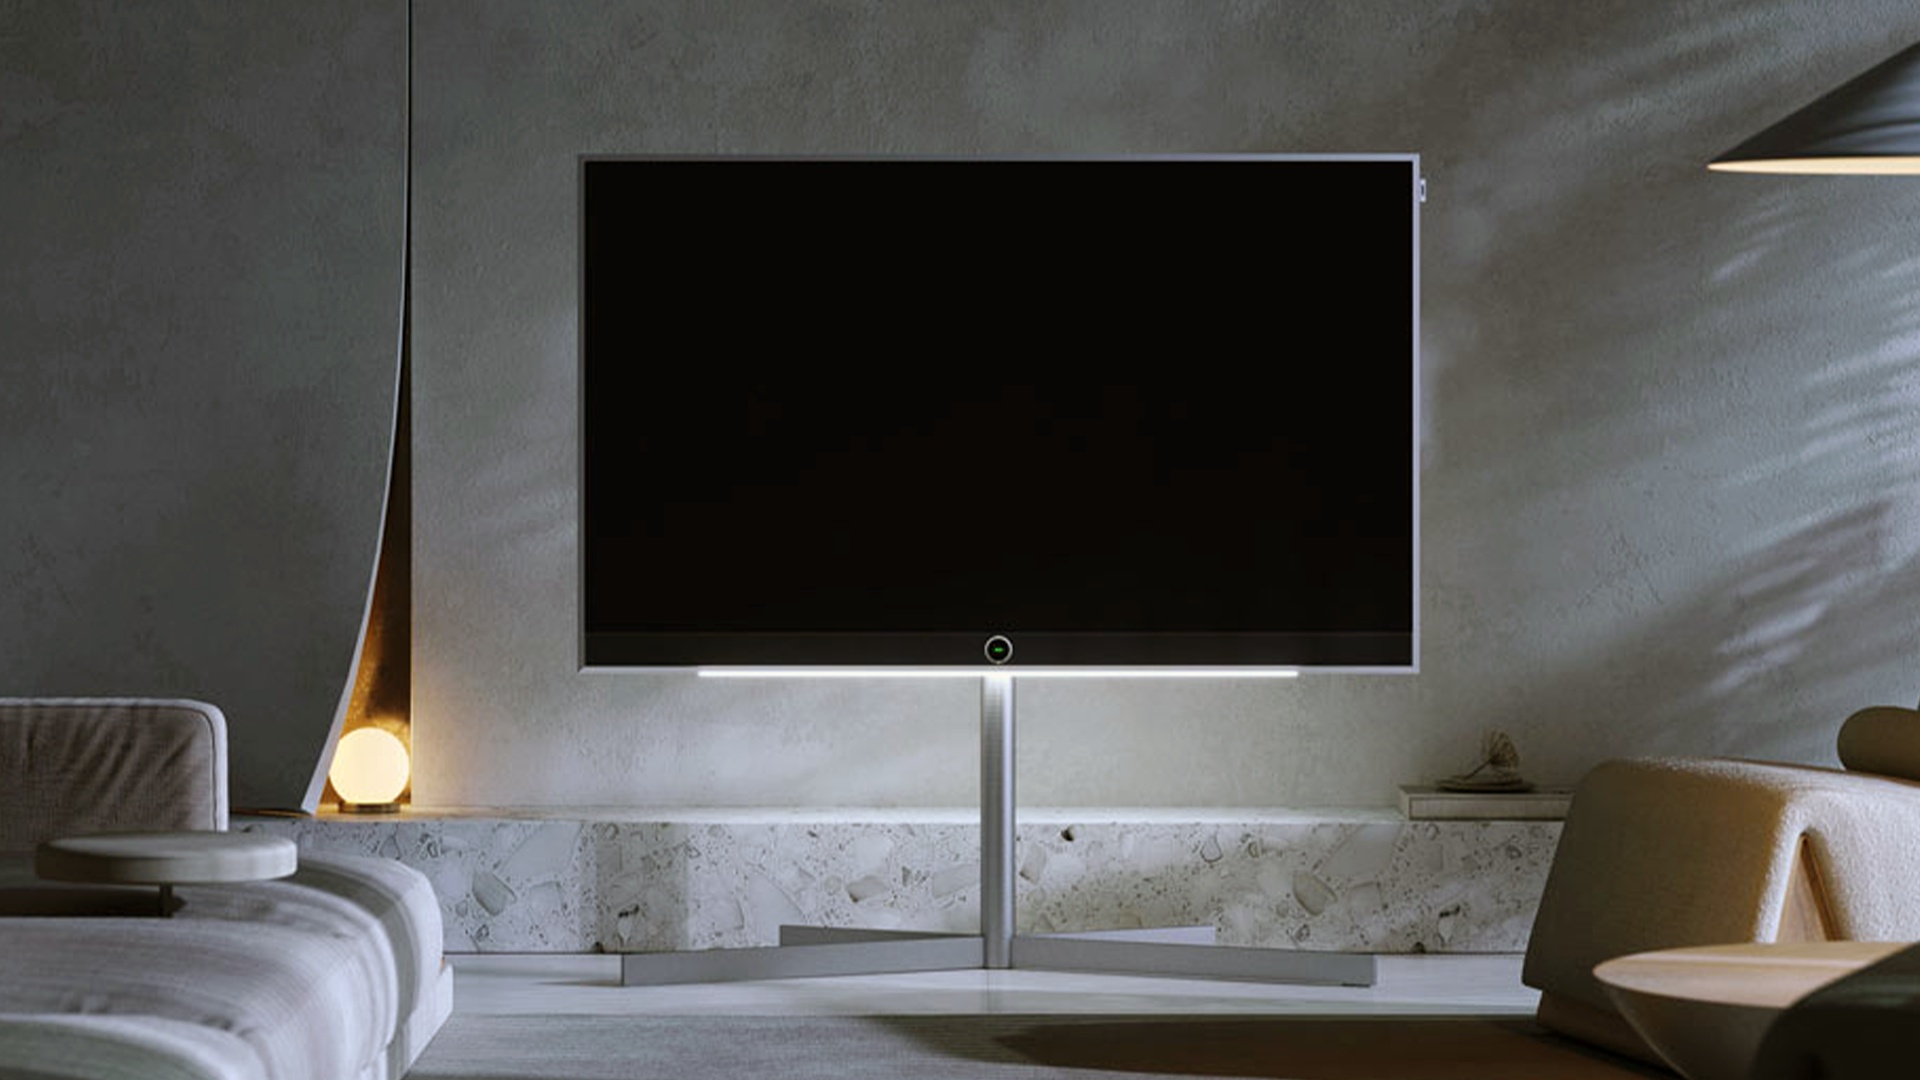 Made in Germany: Der neue OLED-TV von Loewe besteht aus Beton und Metall